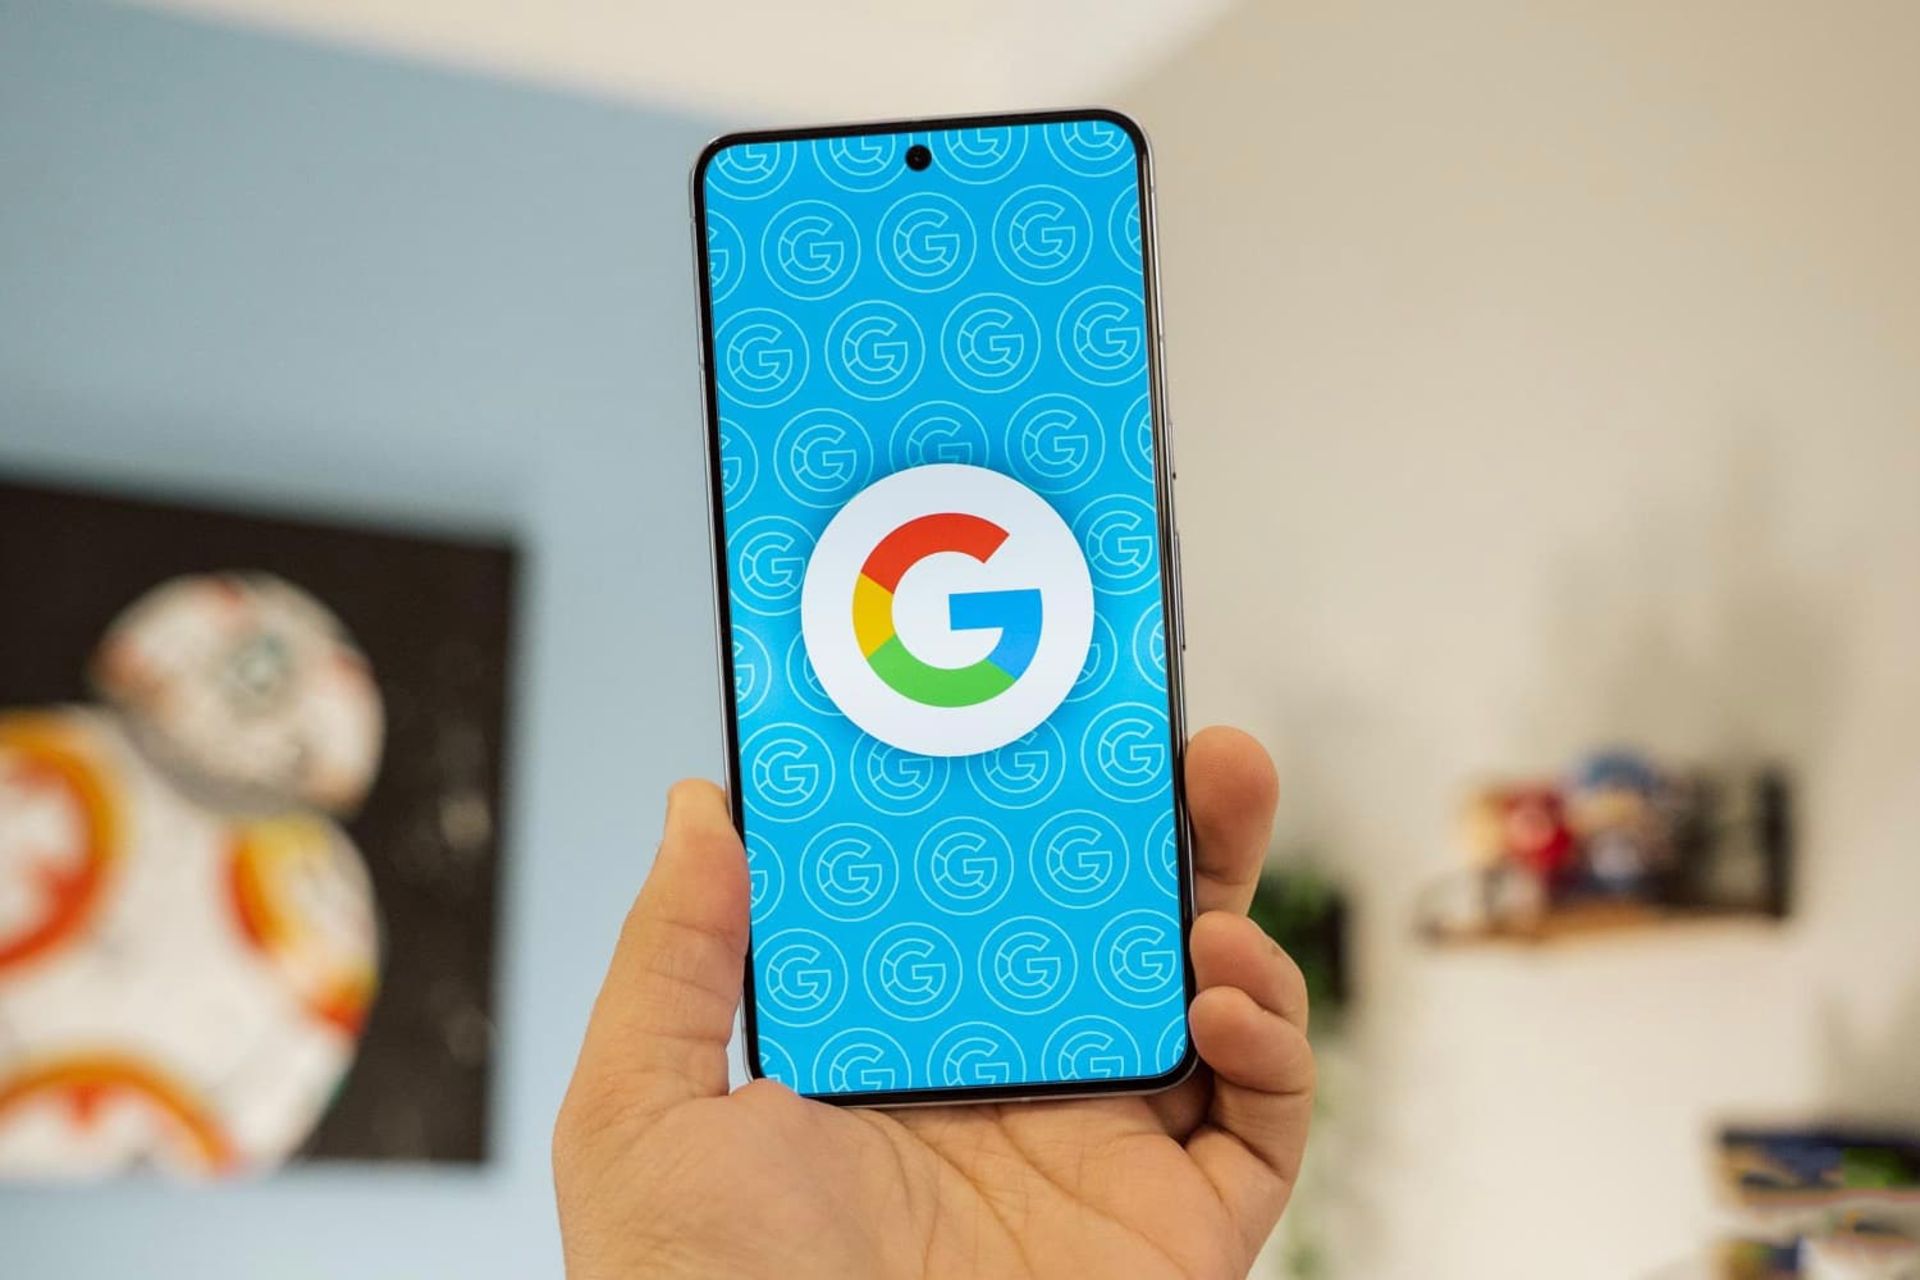 لوگو گوگل / Google روی نمایشگر موبایل در دست